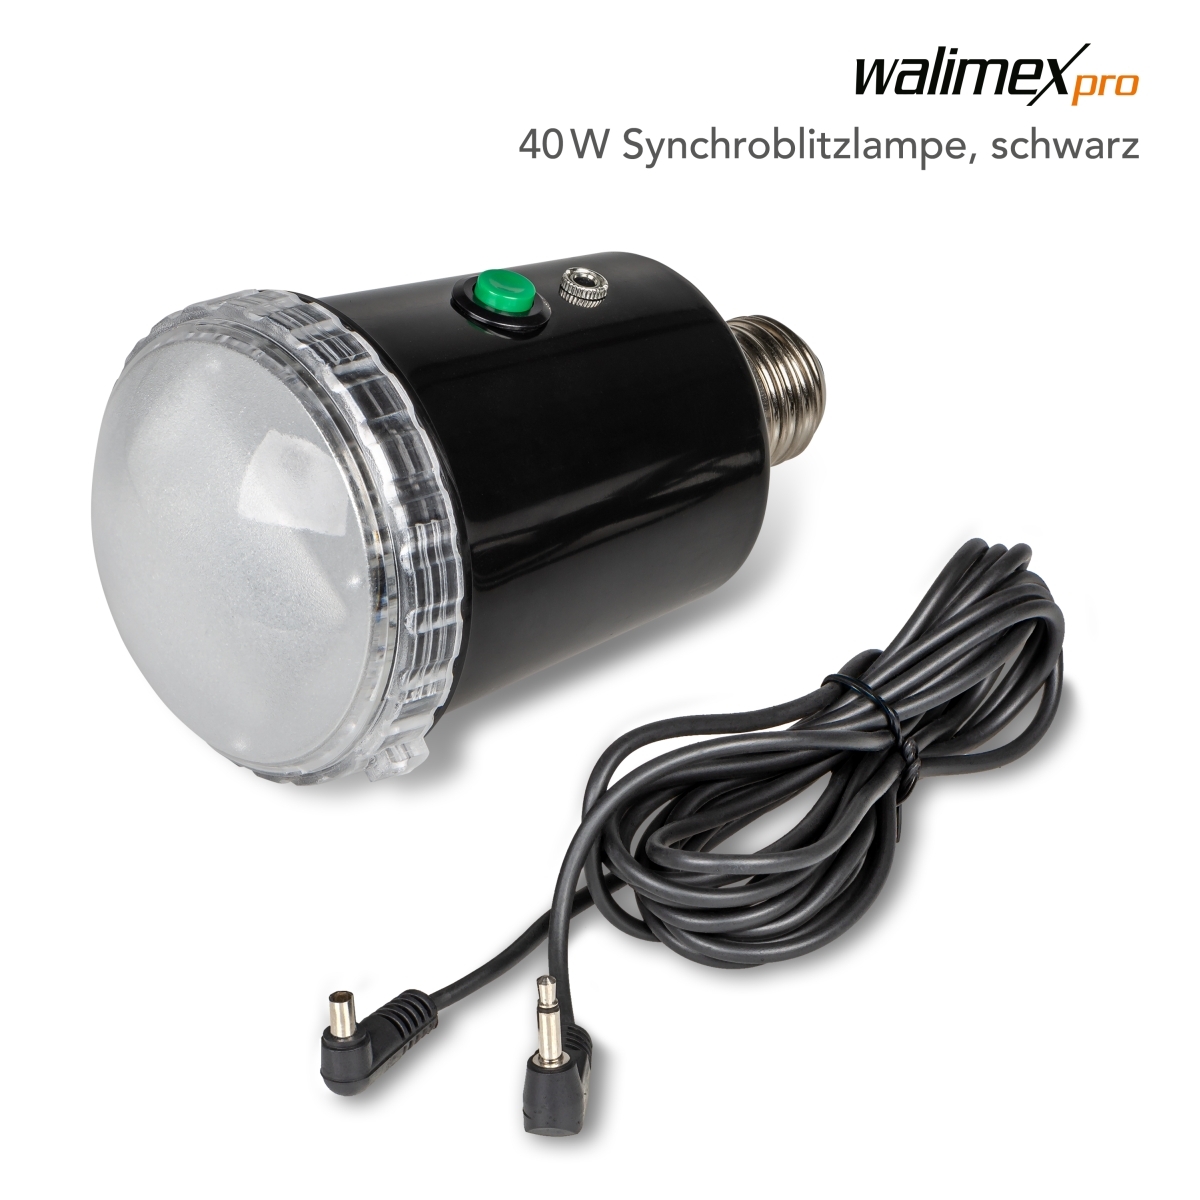 Walimex pro 40W Synchroblitzlampe, schwarz